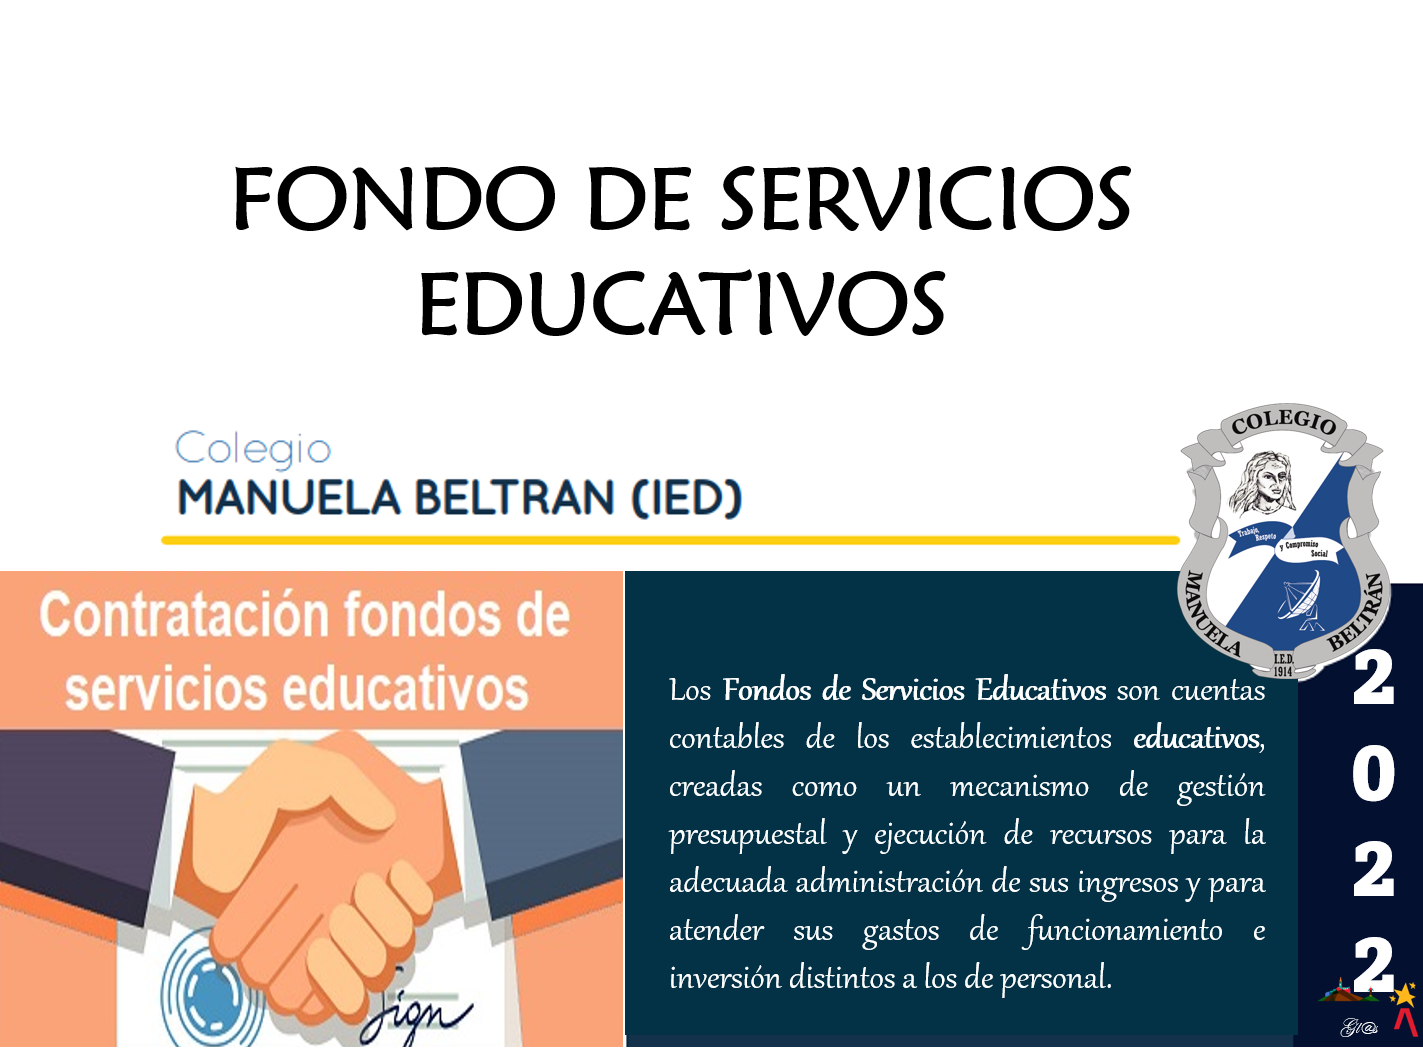 FONDO DE SERVICIOS EDUCATIVOS